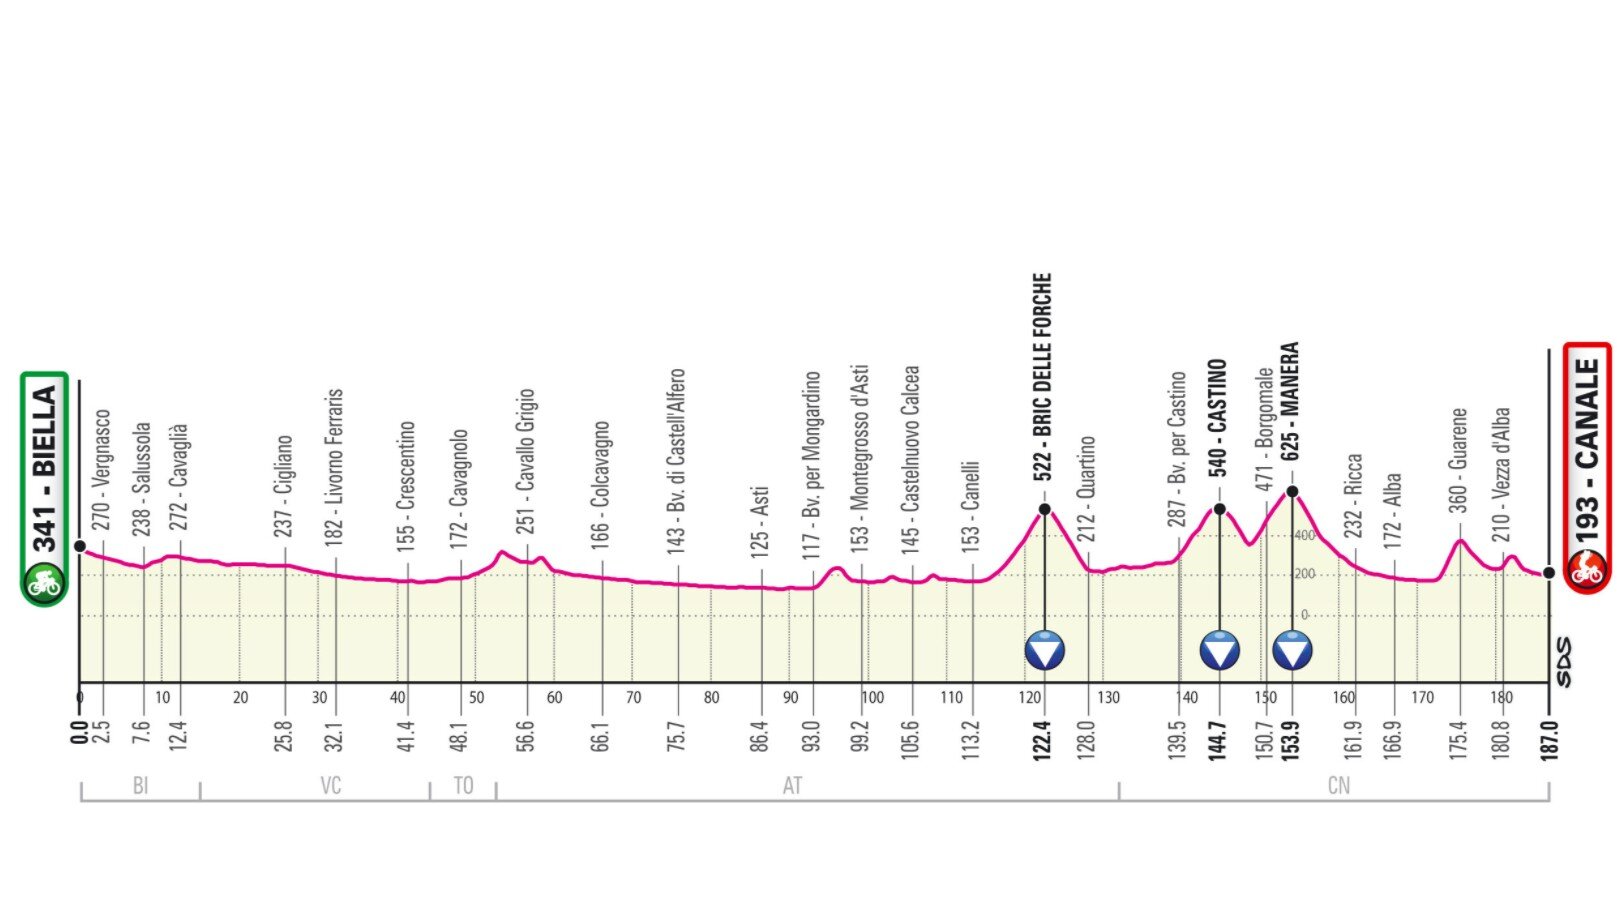 Stage 3 Giro Italia 2021